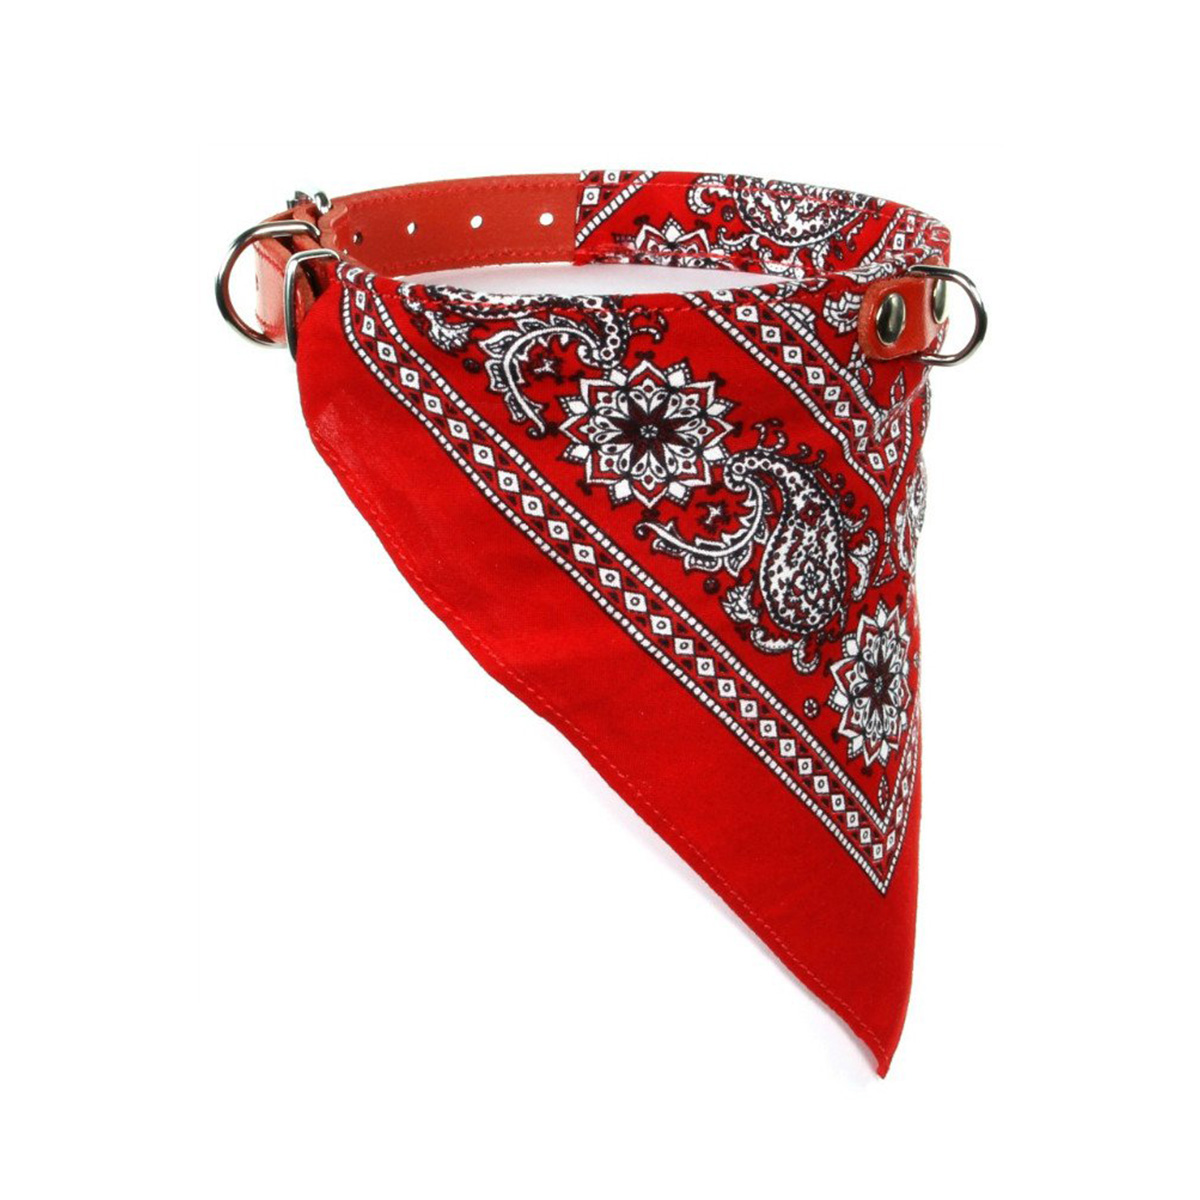 eeuw in de rij gaan staan Antecedent Halsband zakdoek rood - Shop Voor Je Hond